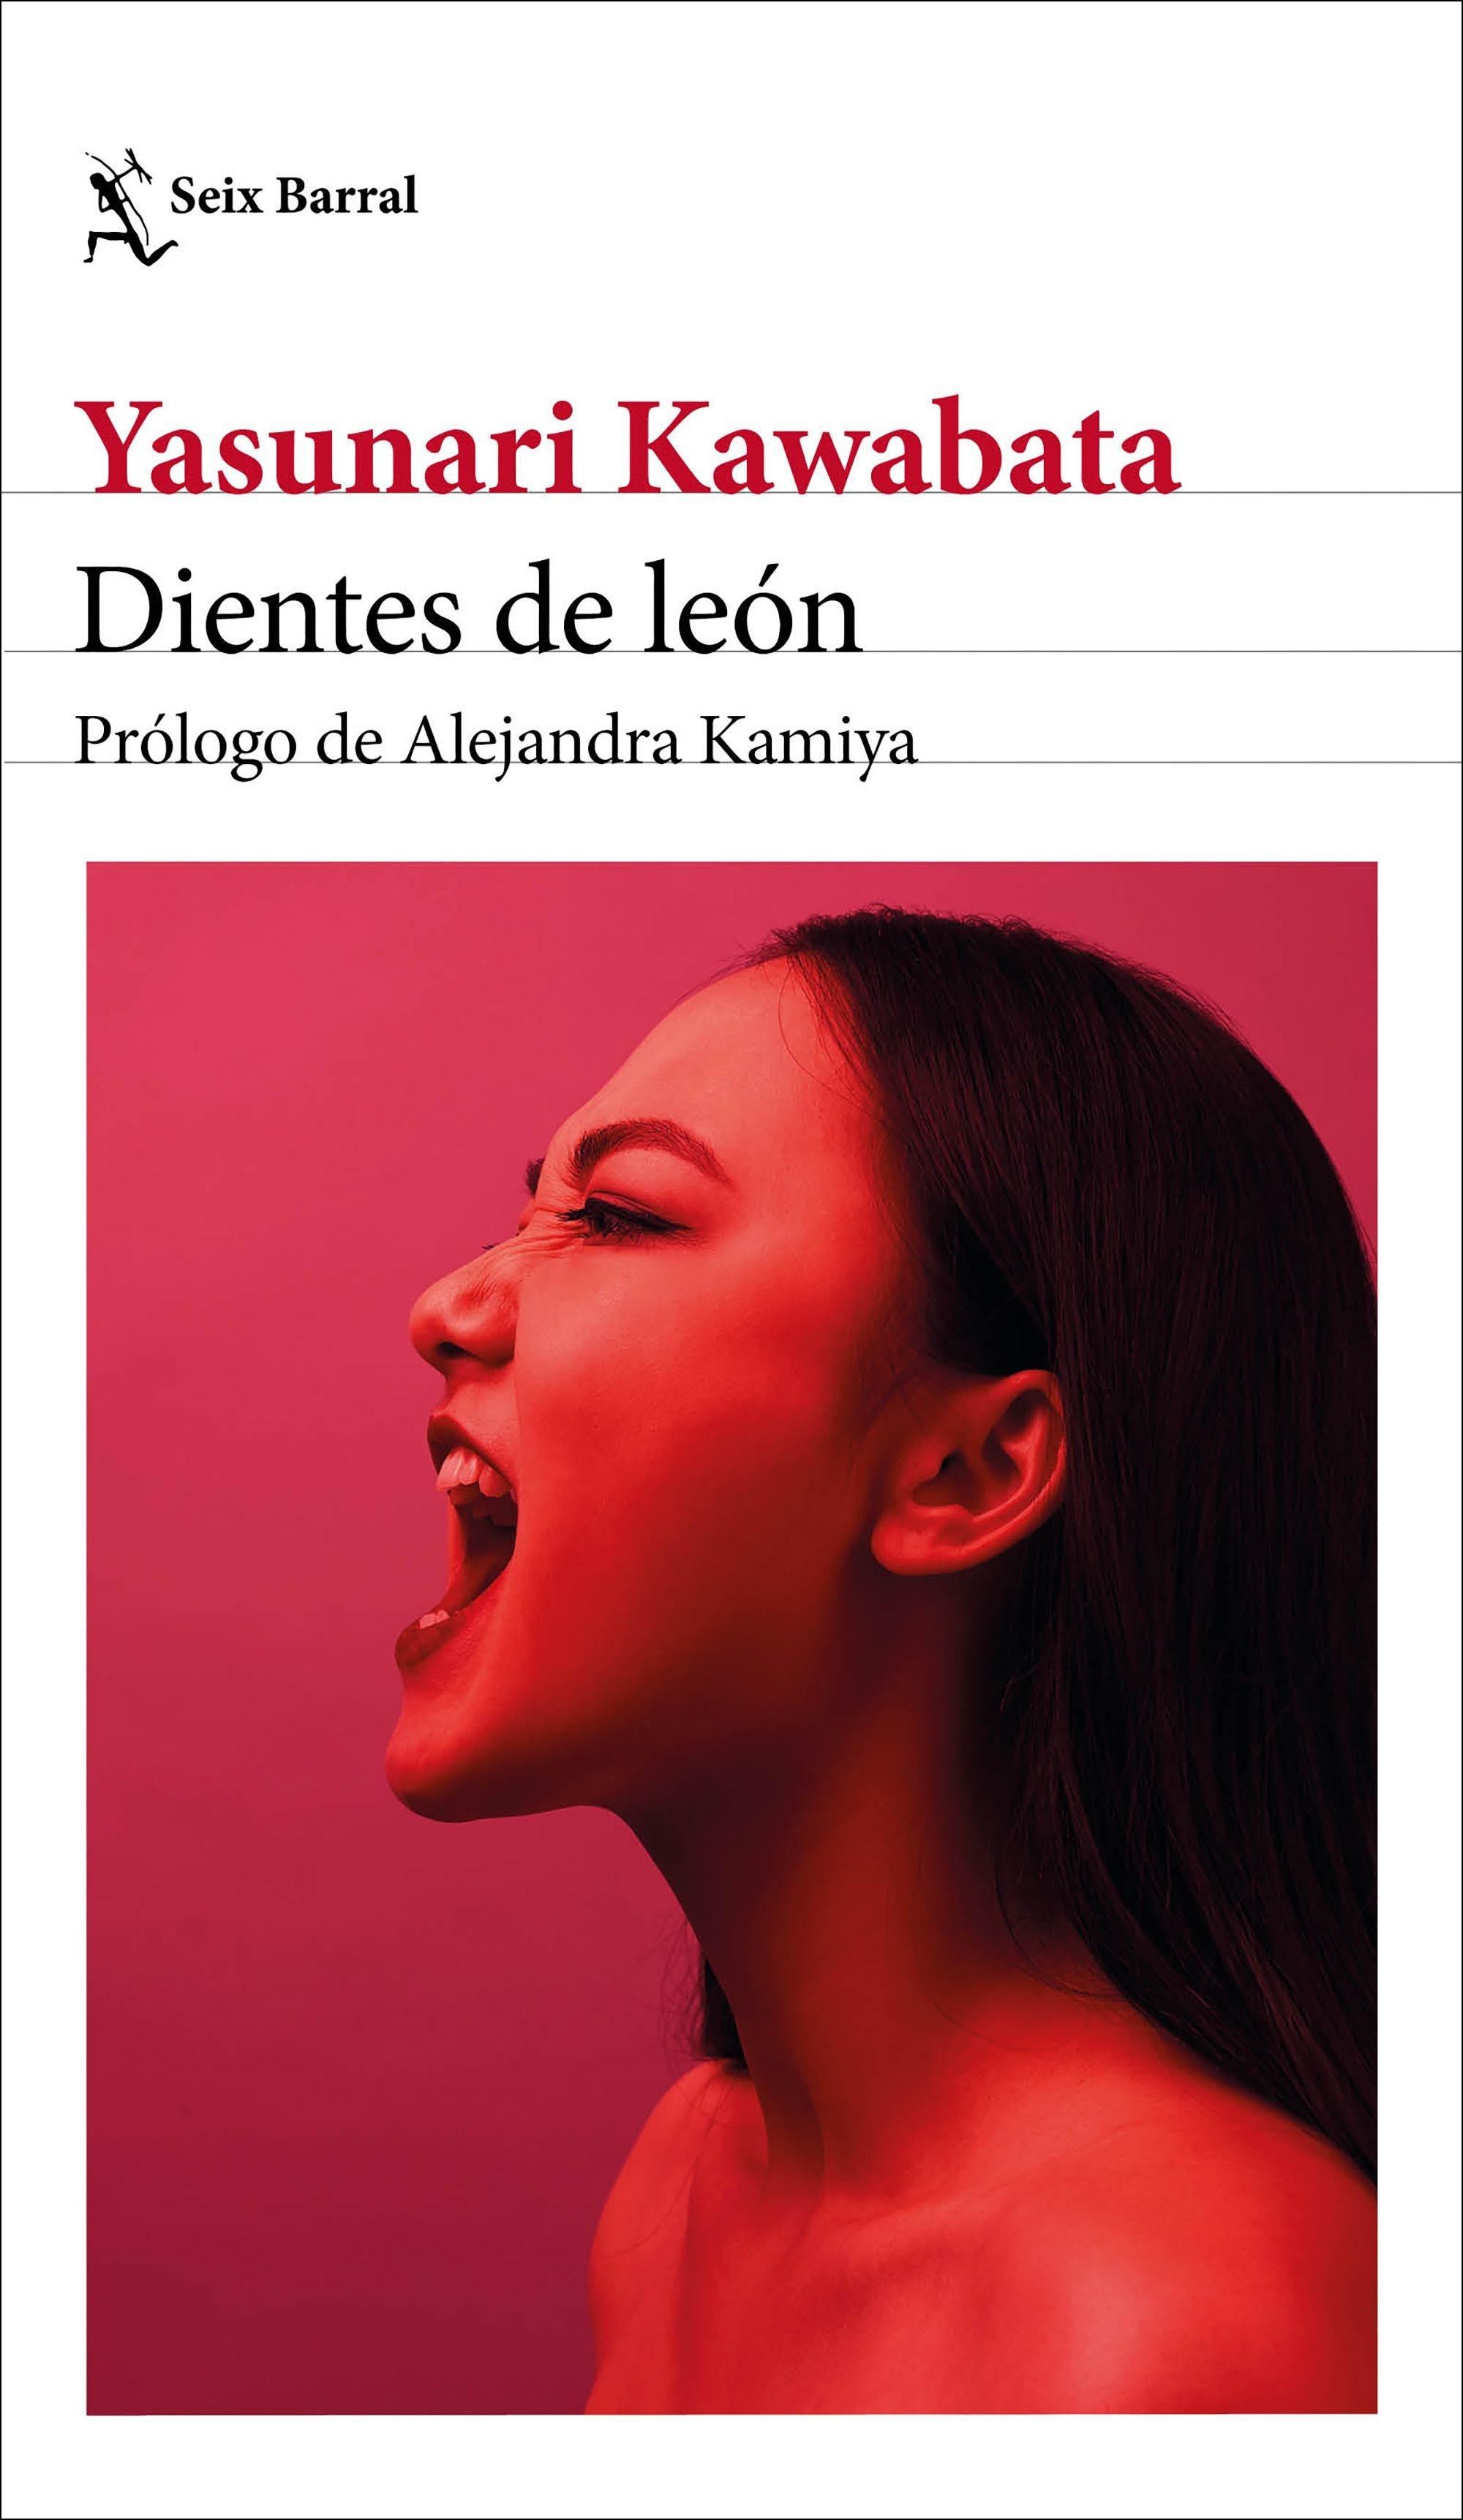 Dientes de León "Prólogo de Alejandra Kamiya"